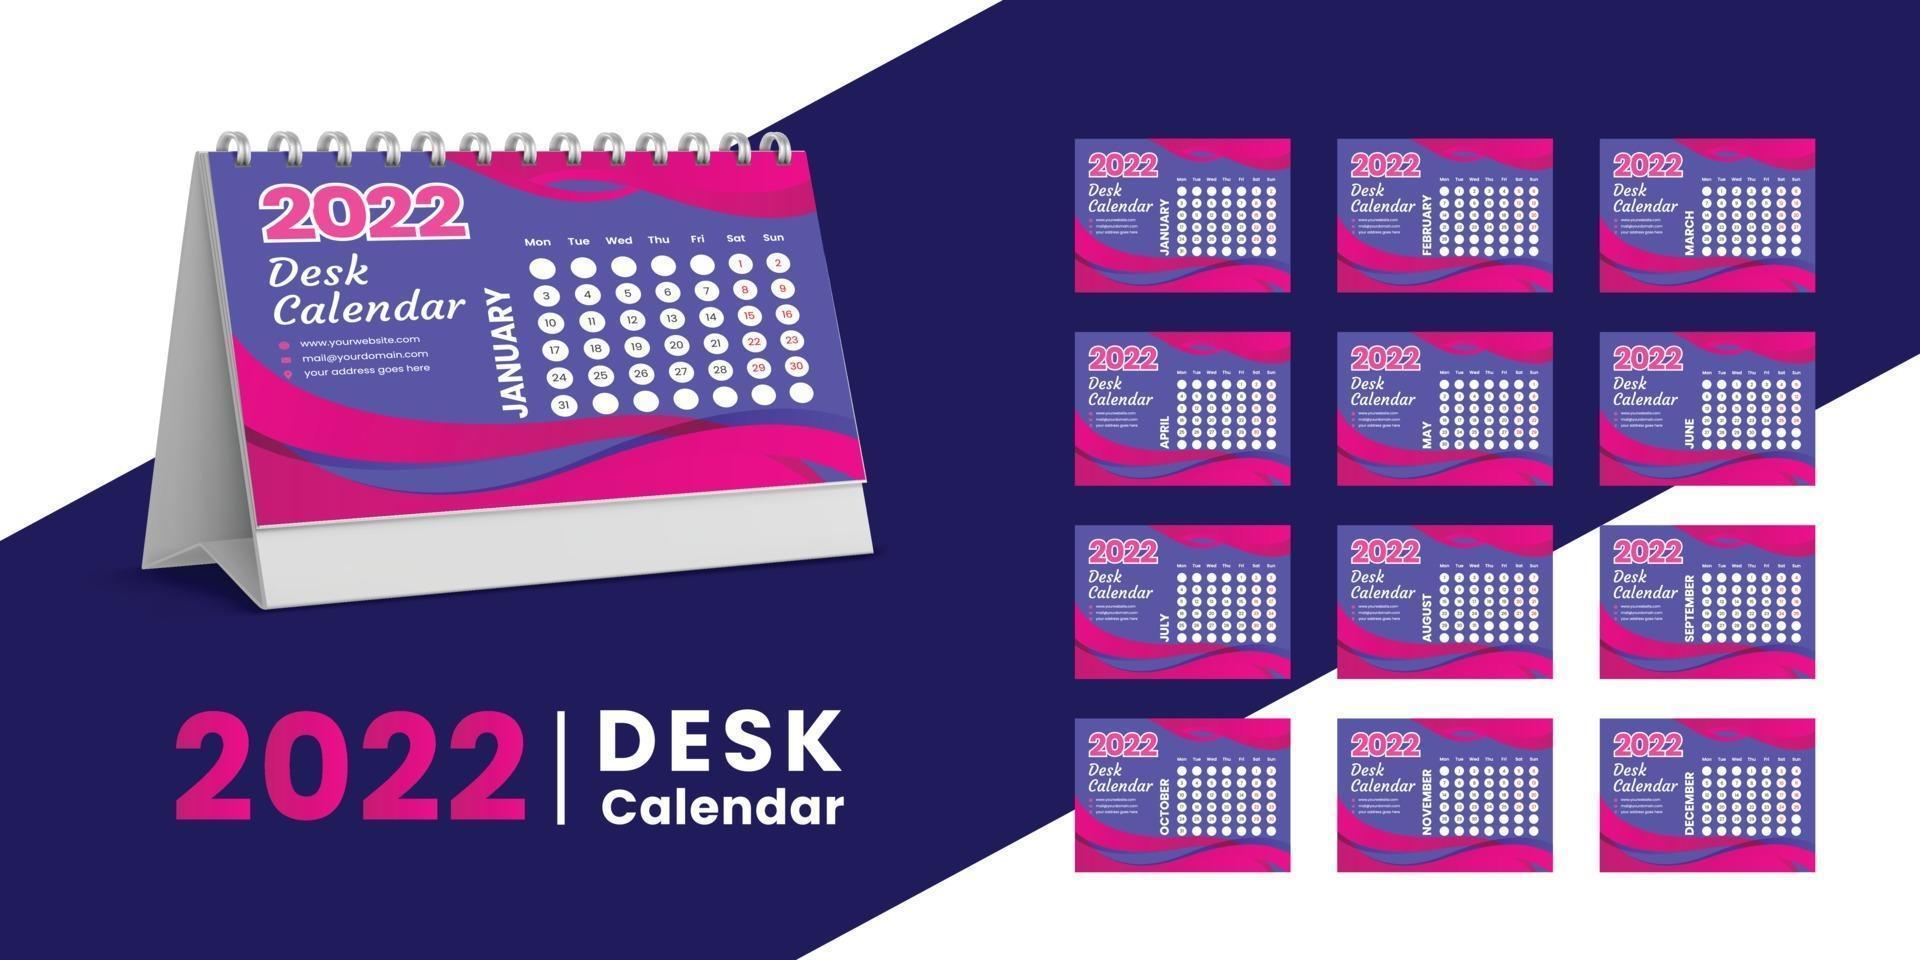 Set Tischkalender 2022 Vorlagendesign, Satz von 12 Monaten, vektor